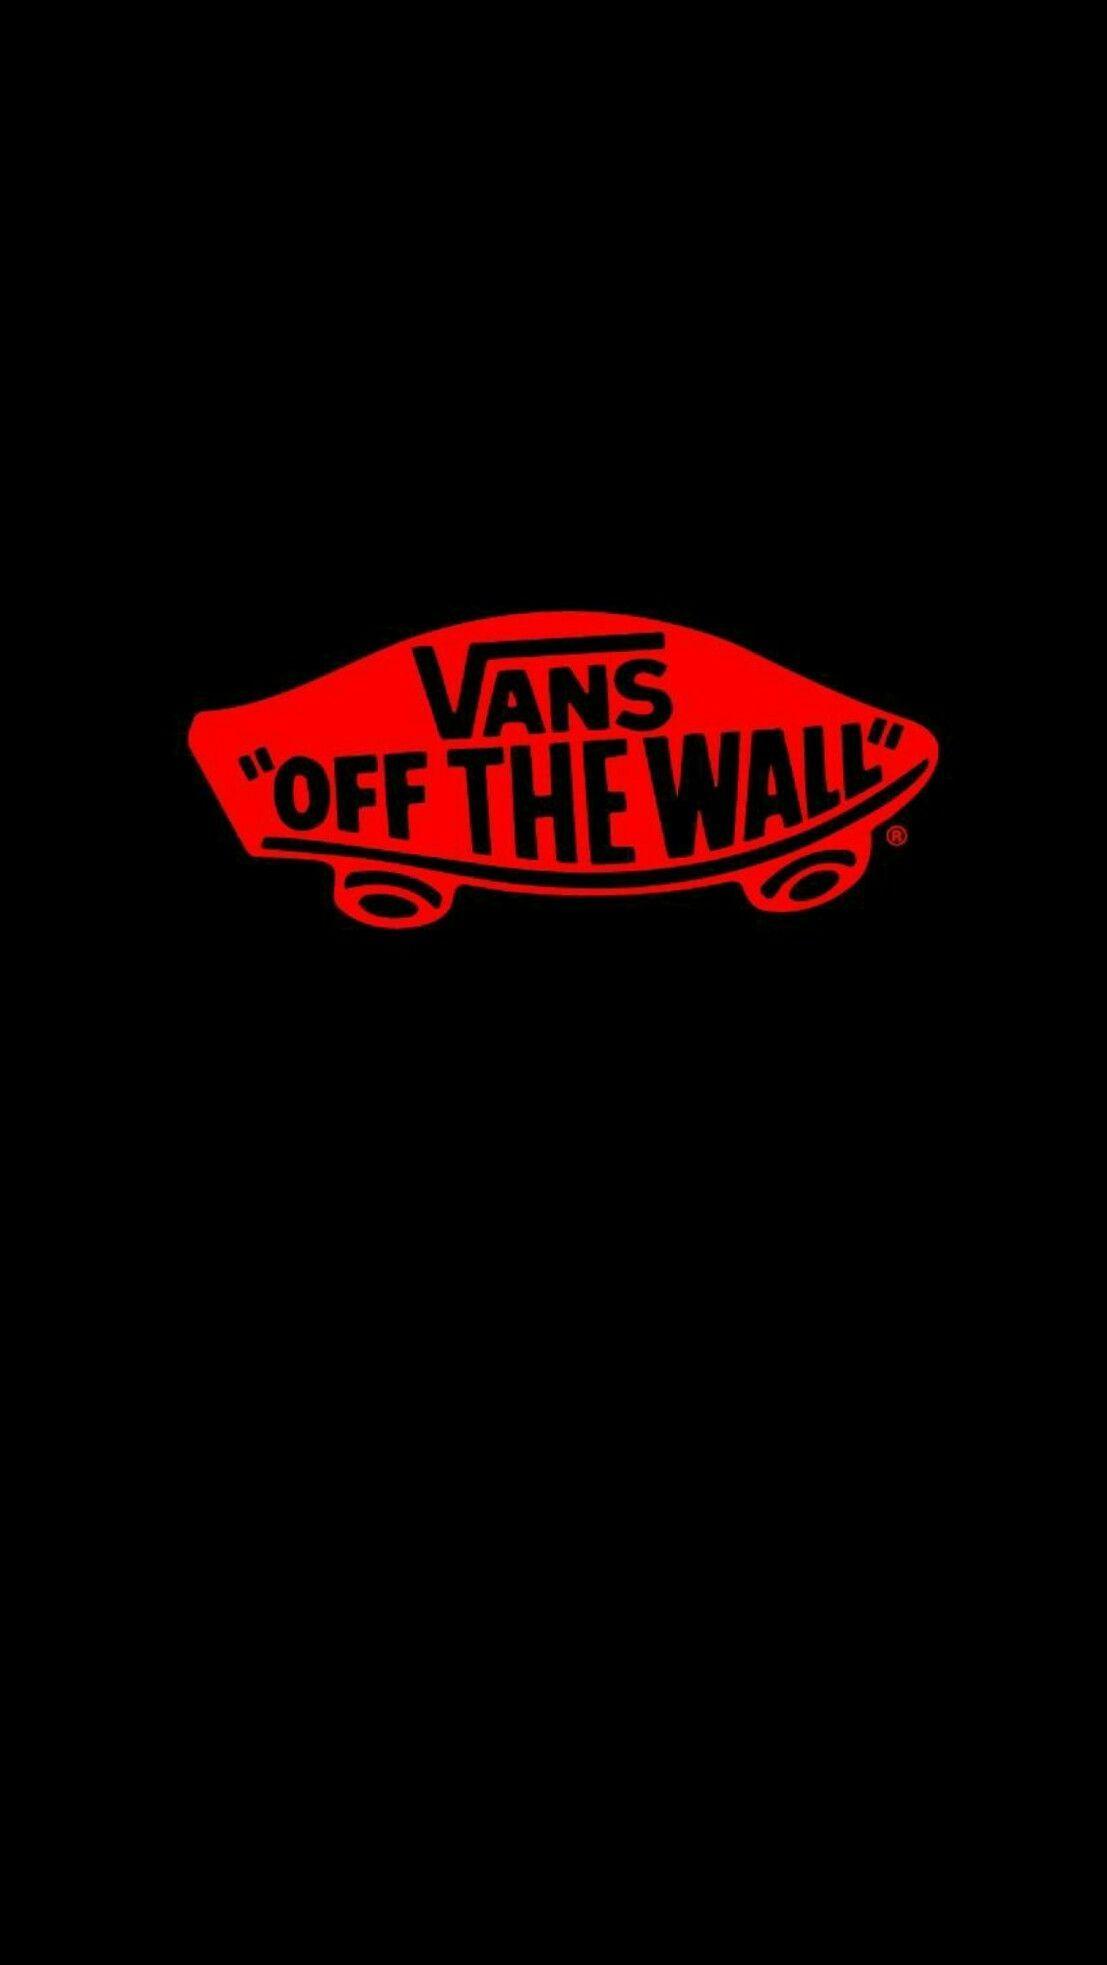 Vans ideas. vans, vans off the wall, vans logo